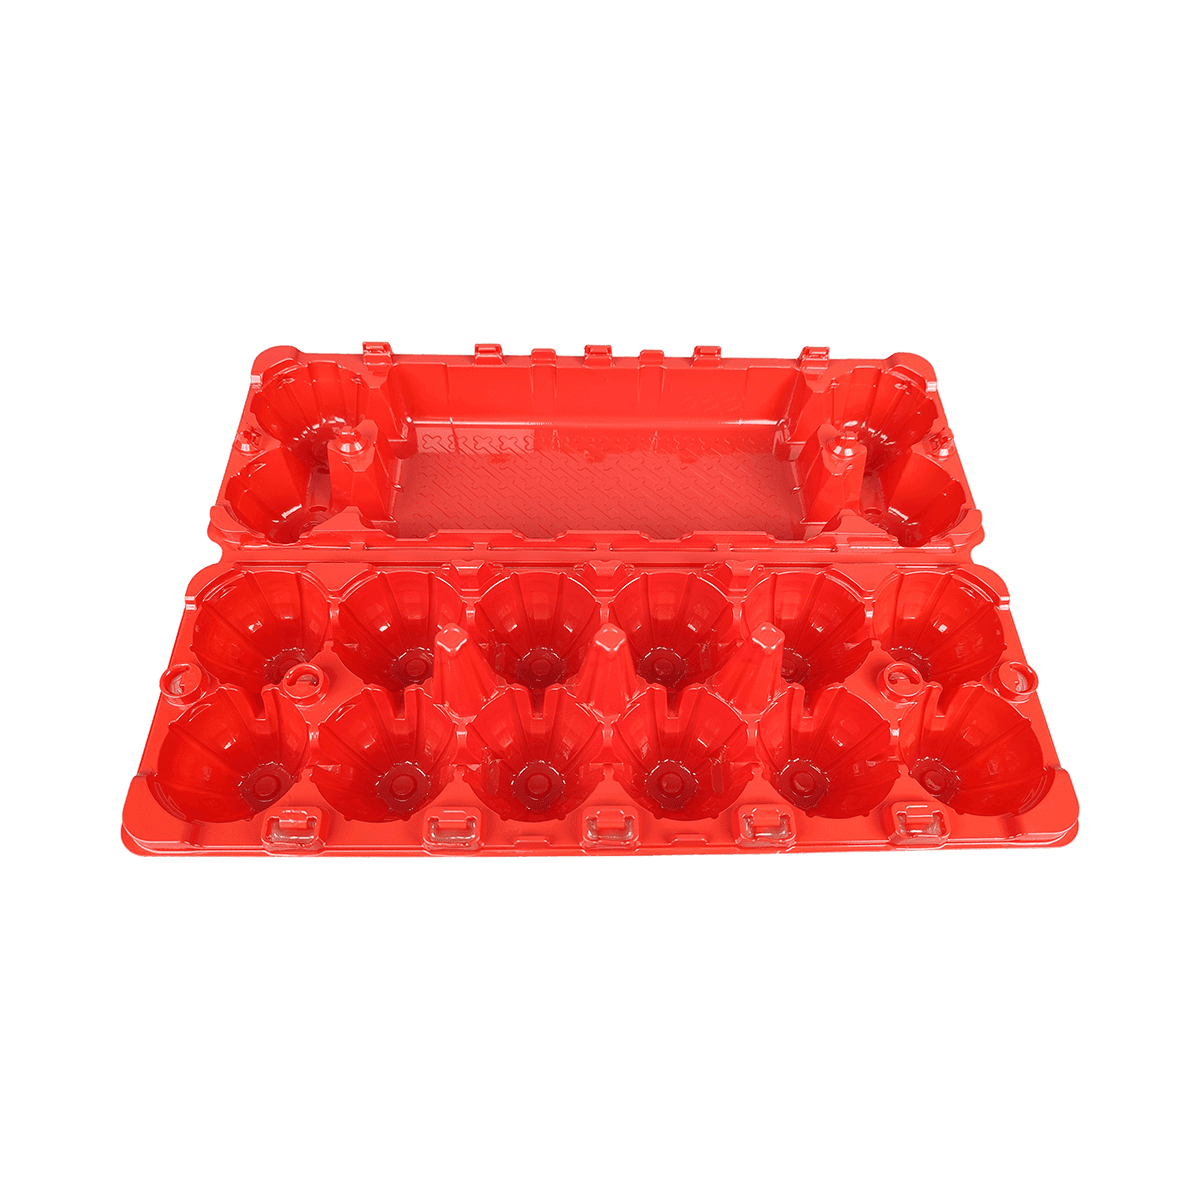 Cartones de huevos del ANIMAL DOMÉSTICO rojo mate del diseño robusto reutilizable 12 para el refrigerador casero del mercado agrícola